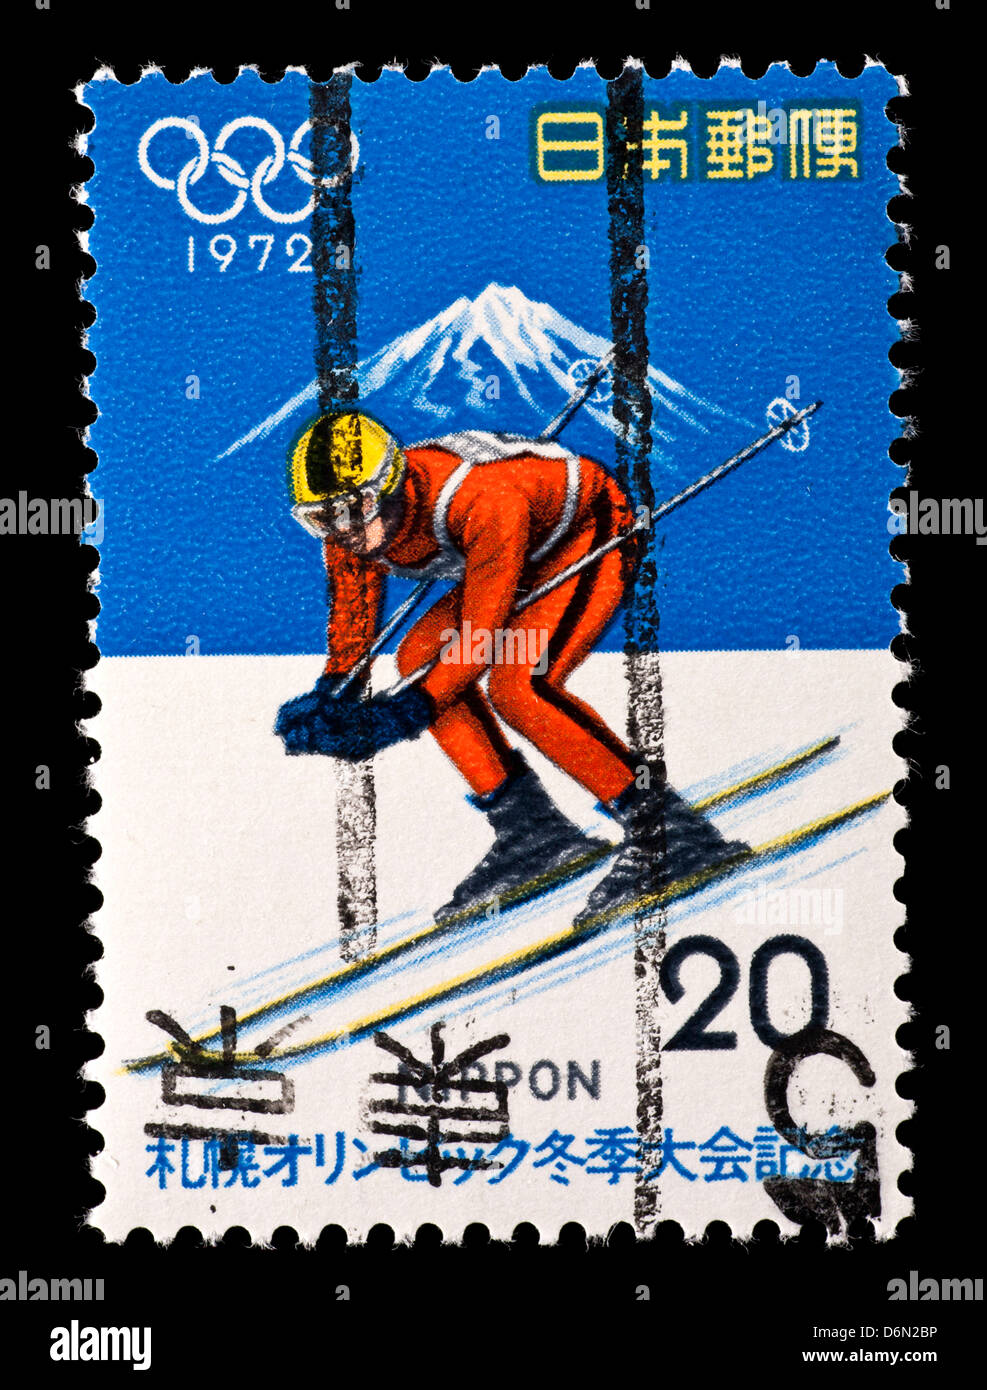 Francobollo dal Giappone raffigurante una discesa sciatore e Mt. Fuji Foto Stock